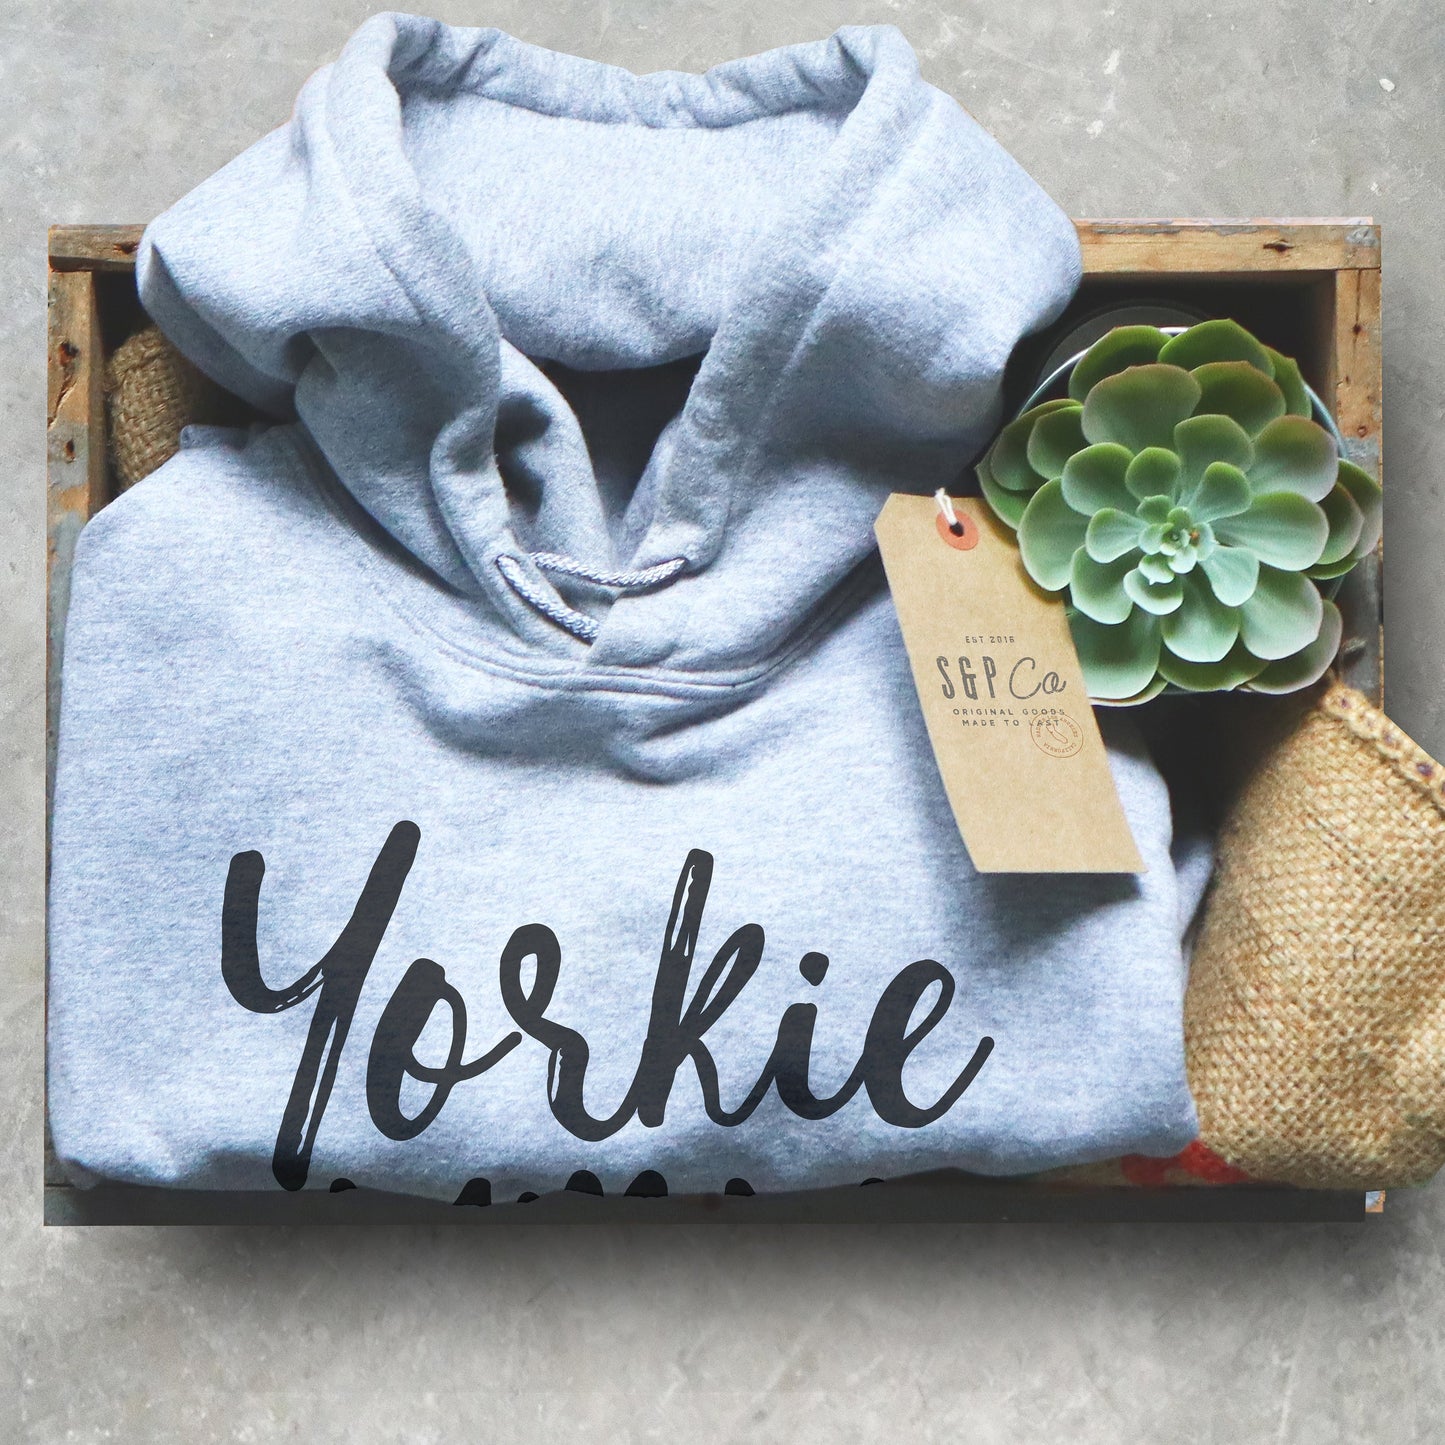 Yorkie Mom Hoodie - Yorkie Shirt, Yorkie Gifts, Yorkie Print, Yorkshire Terrier Gift, Yorkshire Terrier Shirt, Yorkie Owner